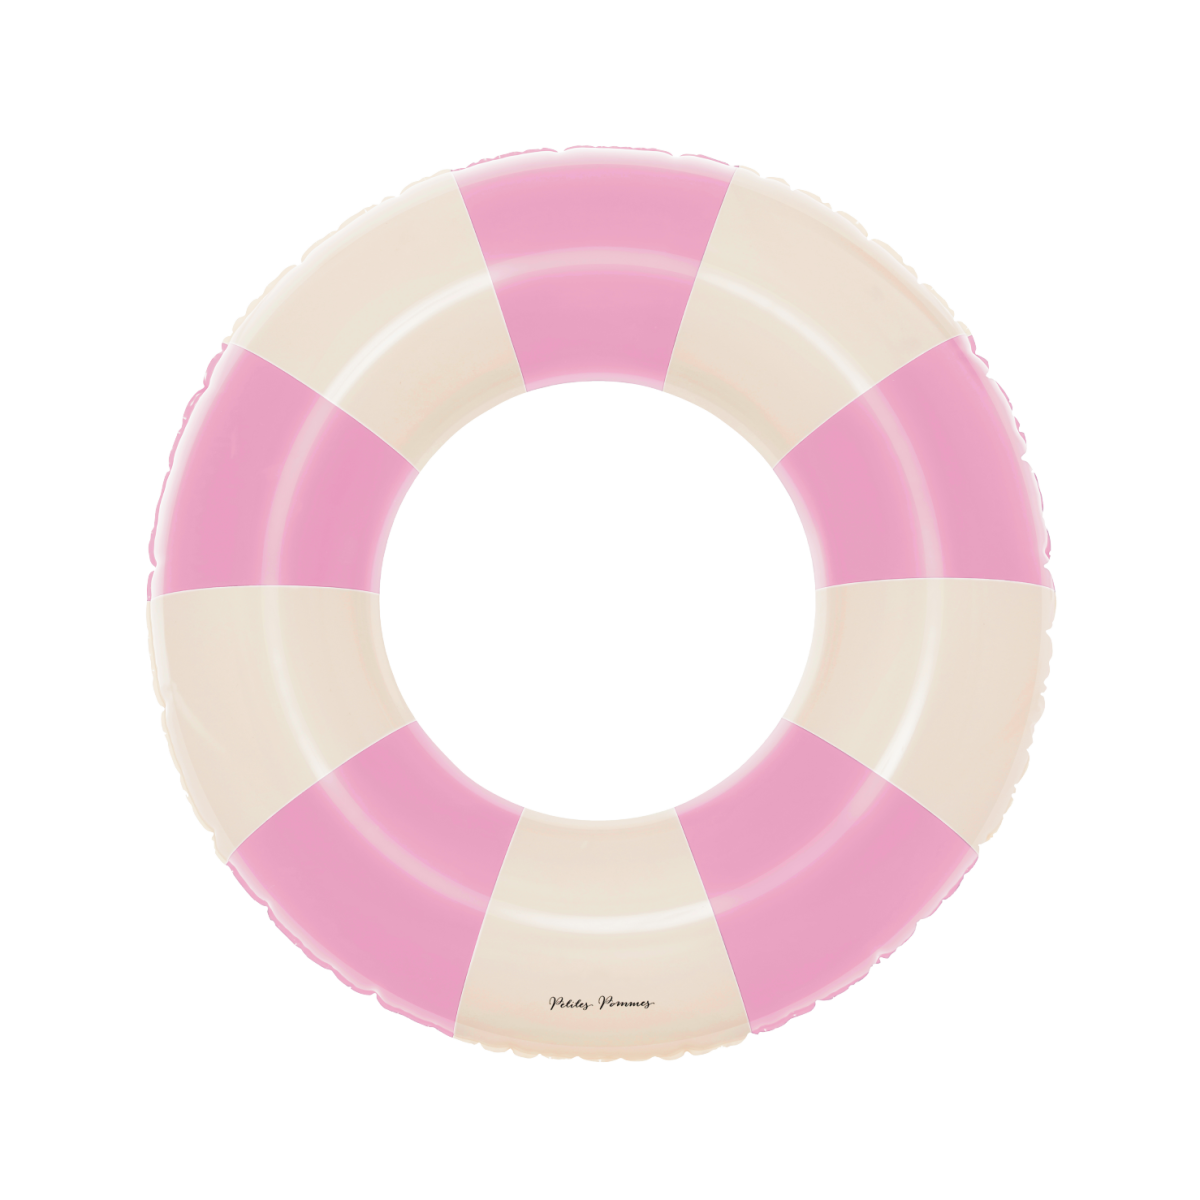 De Petites Pommes Sally zwemband in de kleur bubble pastel is een opblaasbare zwemband met een diameter van 90cm. Met deze zwemring kan jouw kindje heerlijk relaxen en zwemmen in het zwembad of de zee. VanZus.